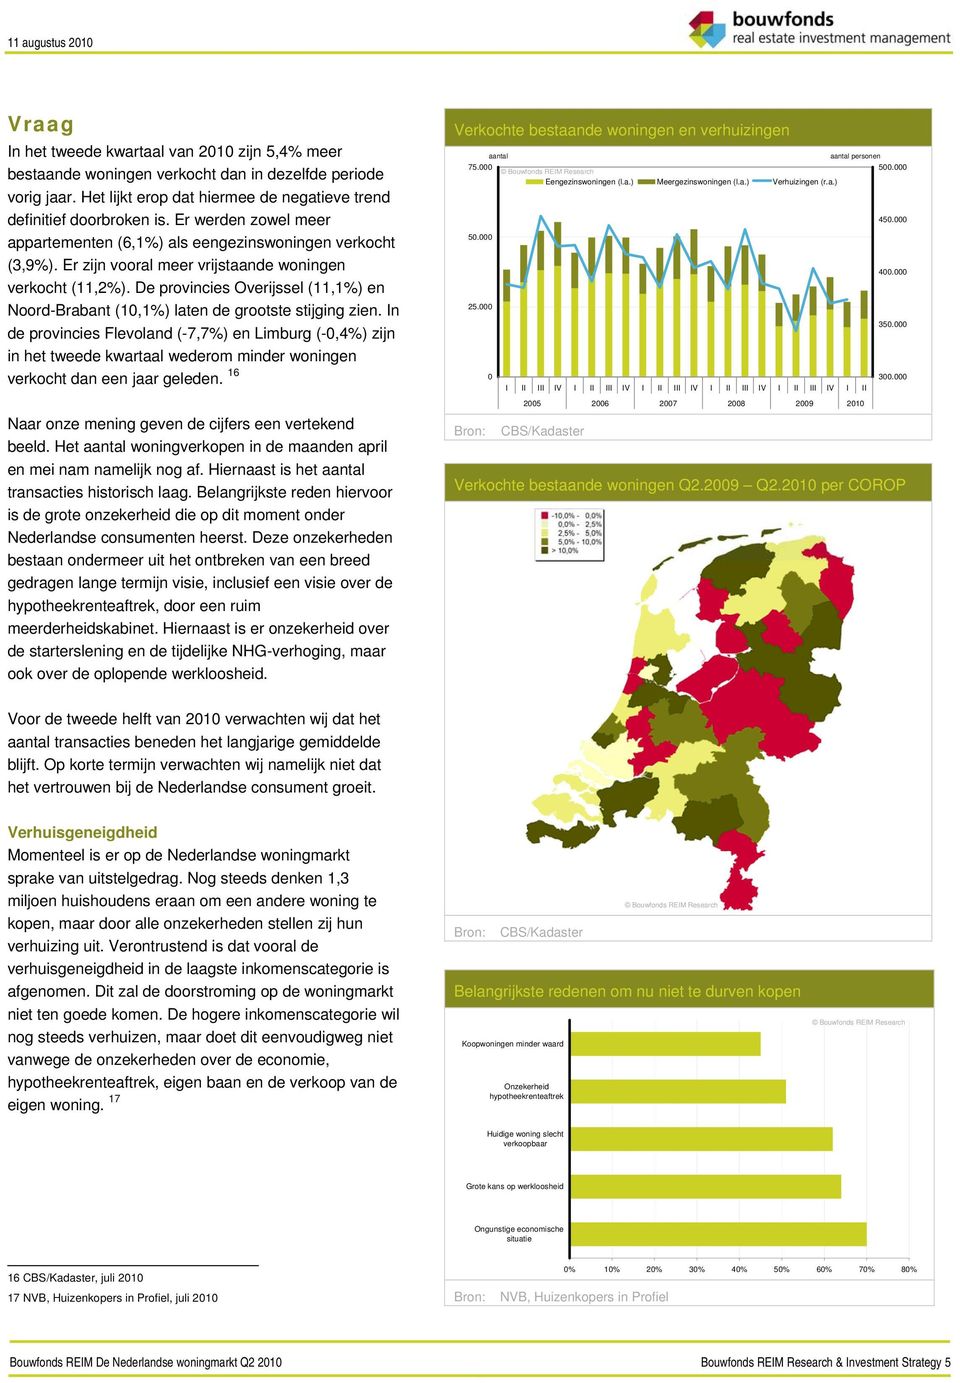 De provincies Overijssel (11,1%) en Noord-Brabant (1,1%) laten de grootste stijging zien.